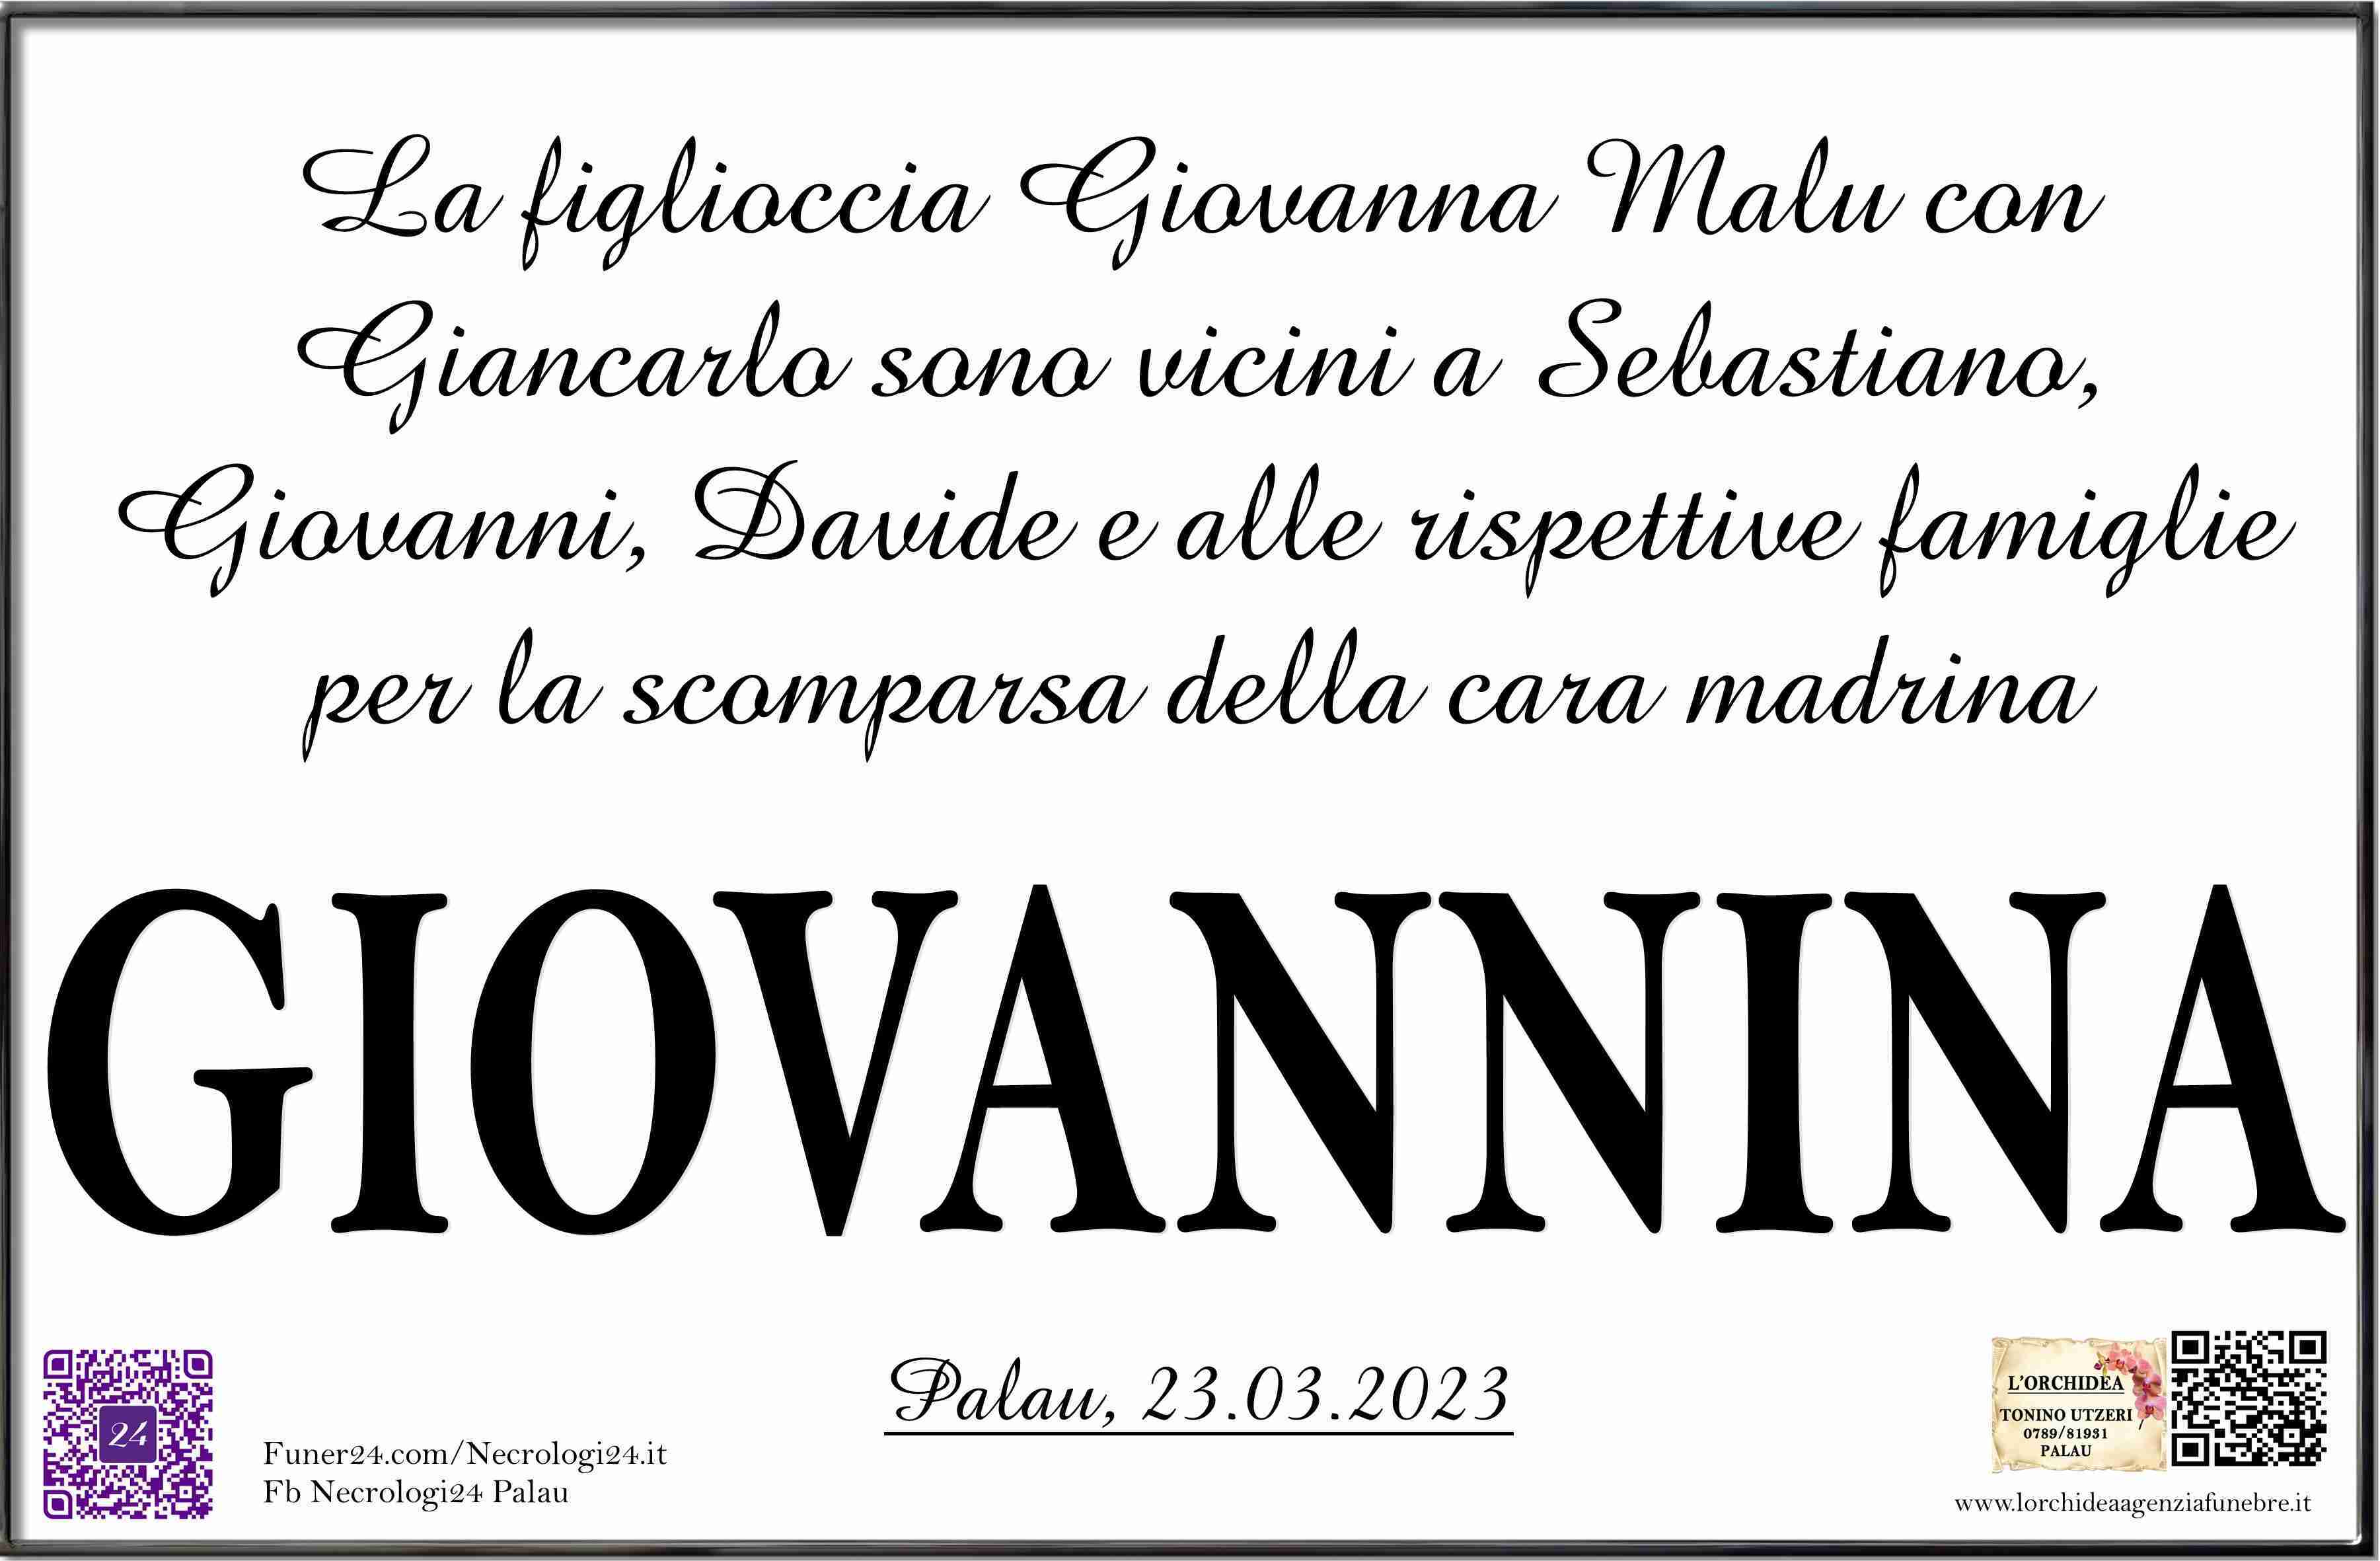 Giovannina Pisciottu